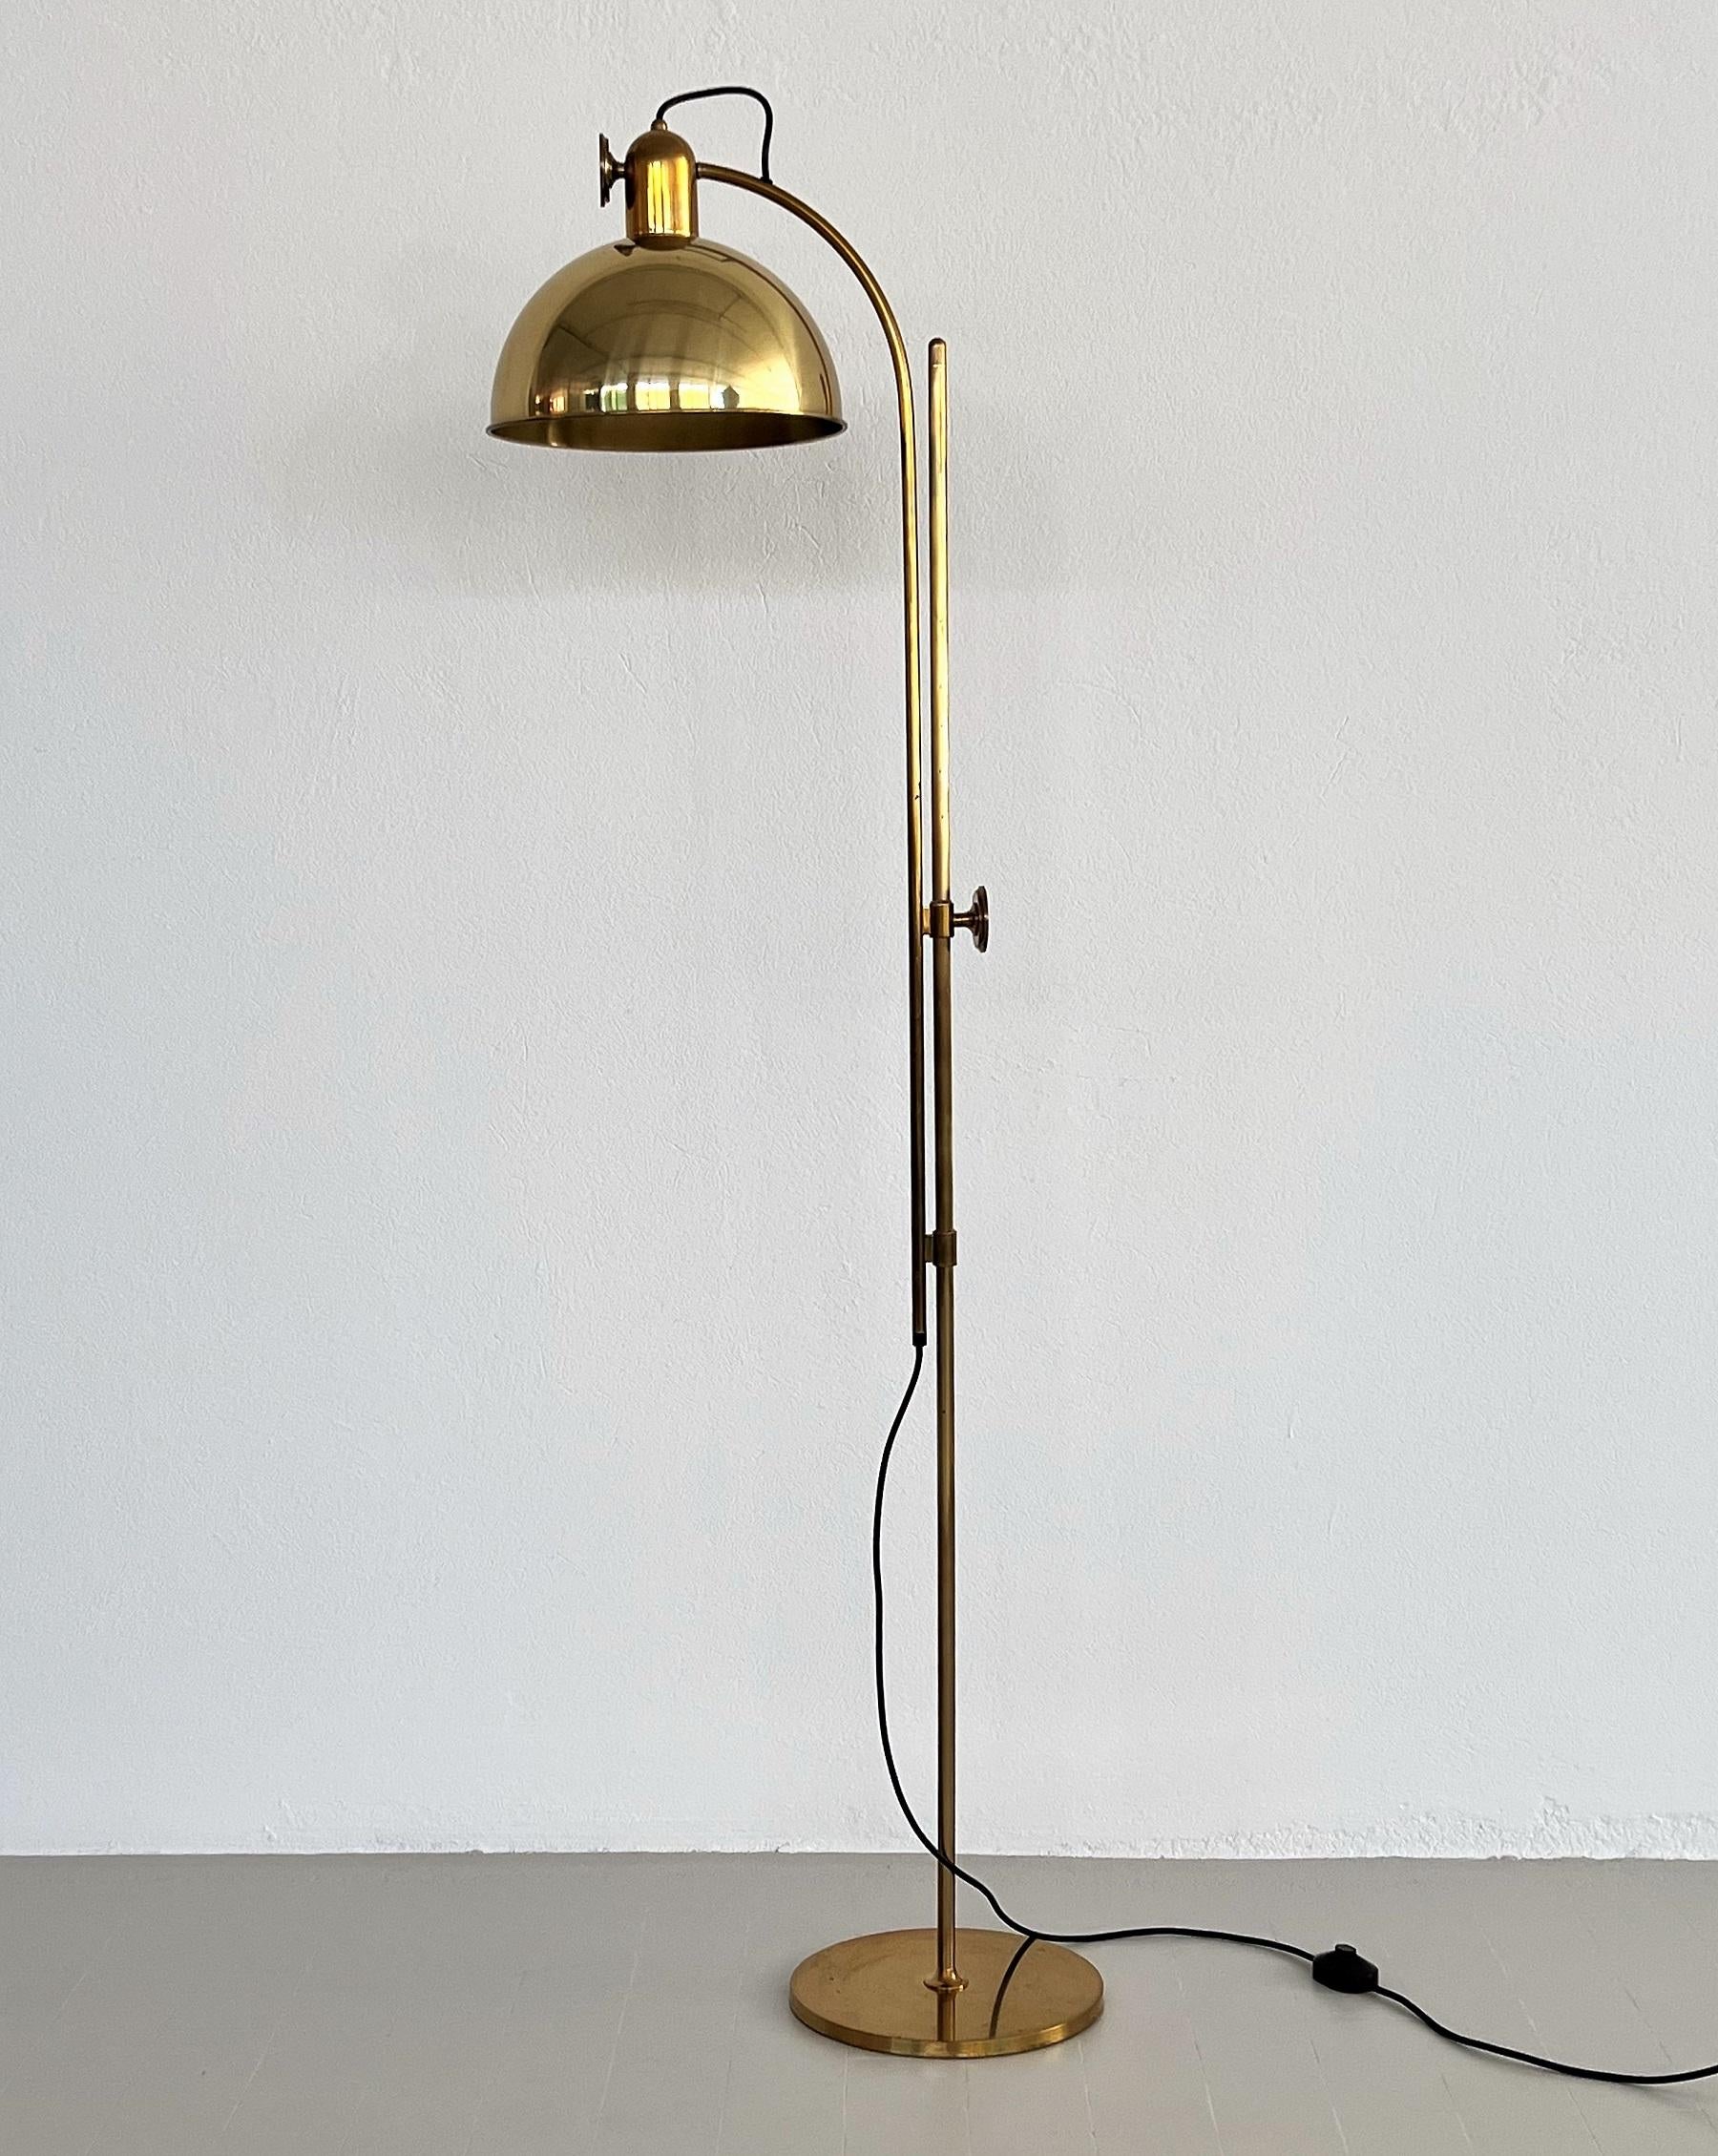 Magnifique et très rare lampadaire de Florian Schulz fabriqué dans les années 1970.
Qualité allemande.
Le lampadaire est fabriqué en laiton massif et est réglable en hauteur.
Grâce au grand bouton rond en laiton, qui est rotatif, vous pouvez